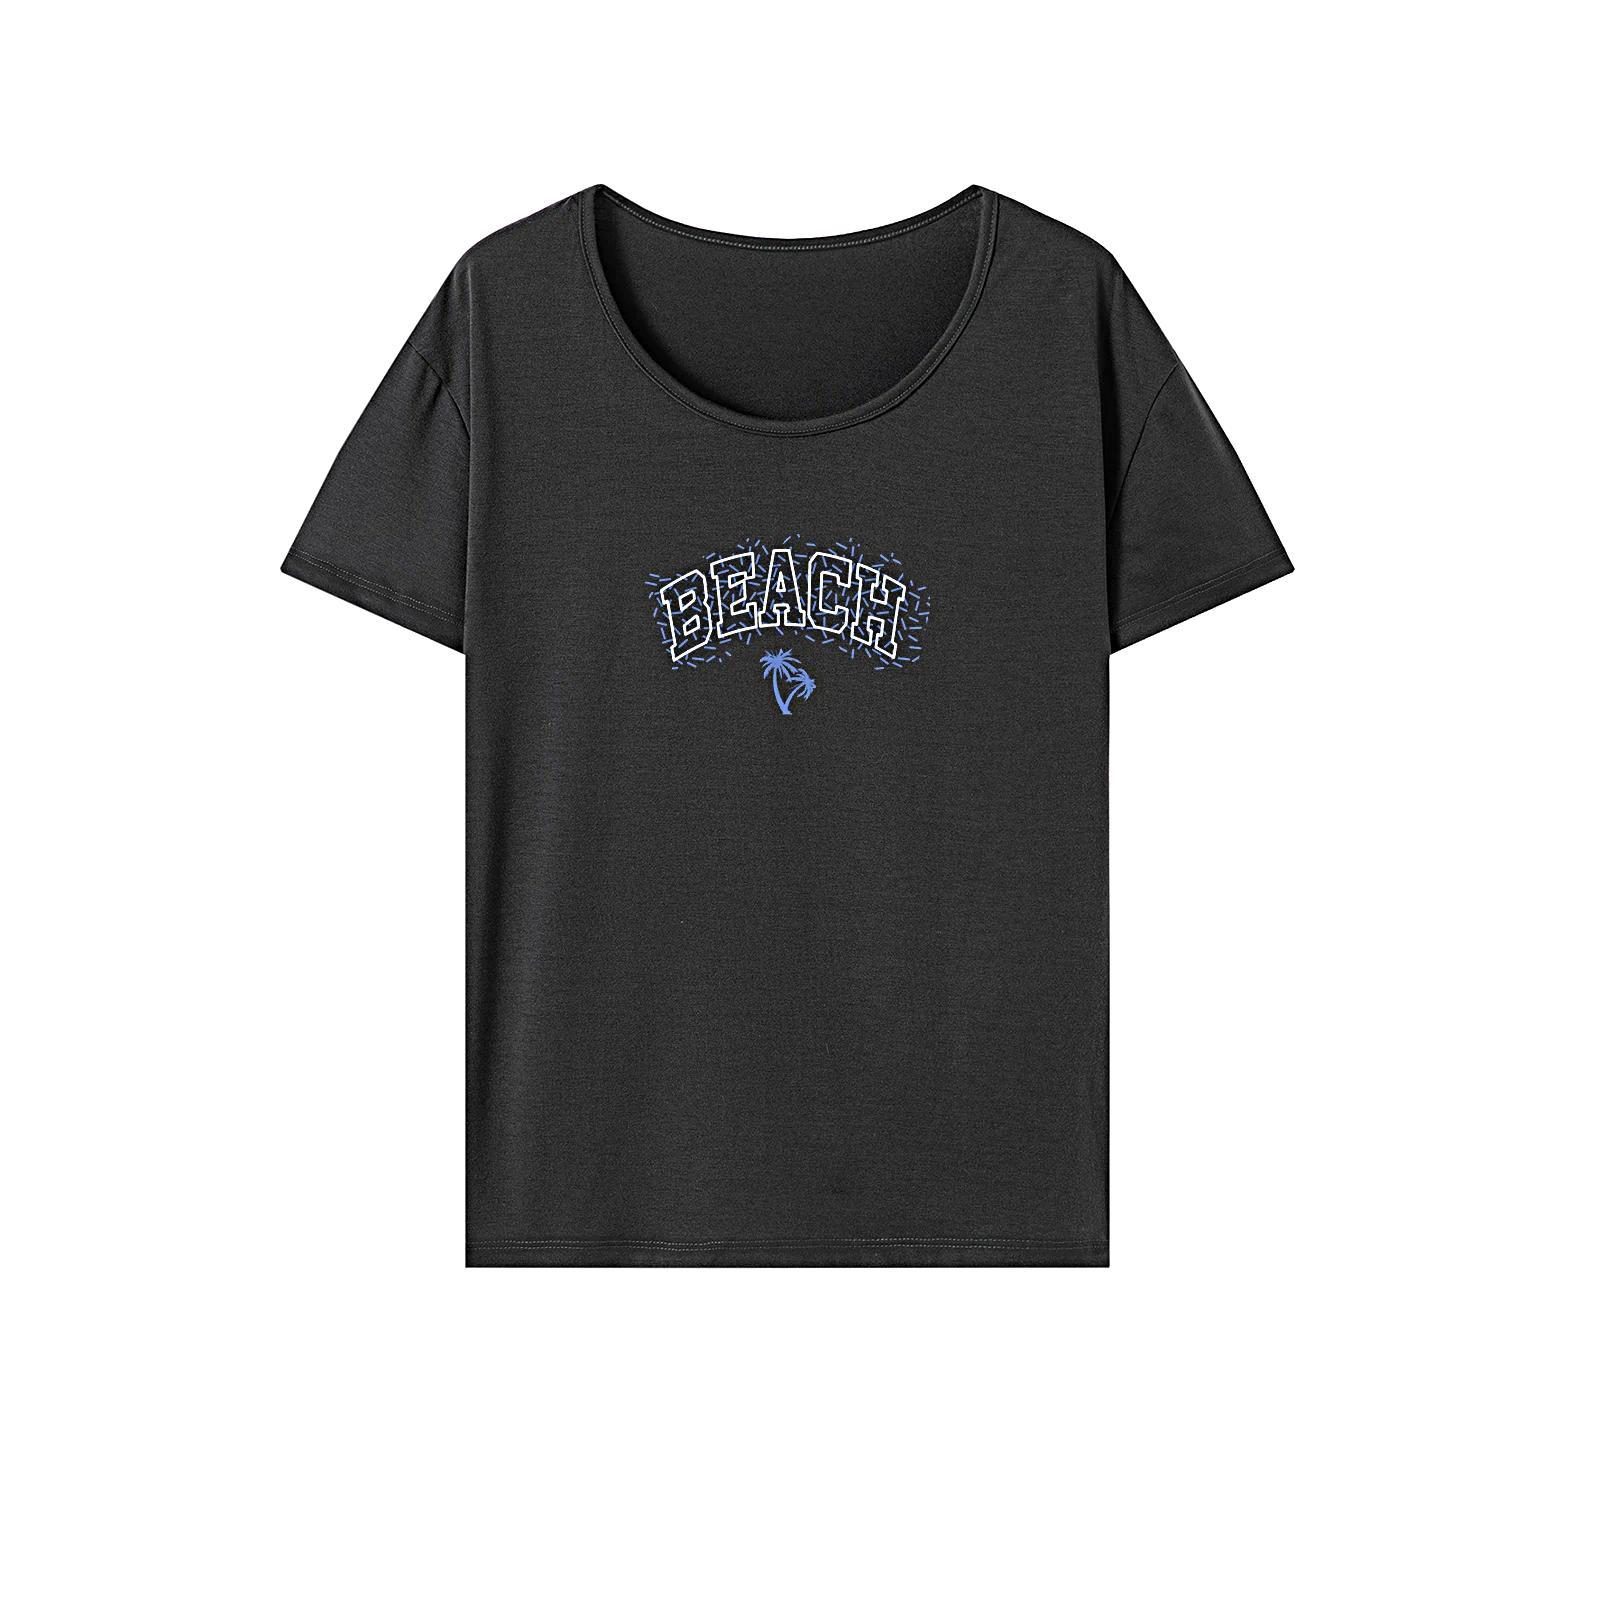 Women's T Shirt Summer Fashion Short Sleeve Top for Camping Walking Shopping XXL